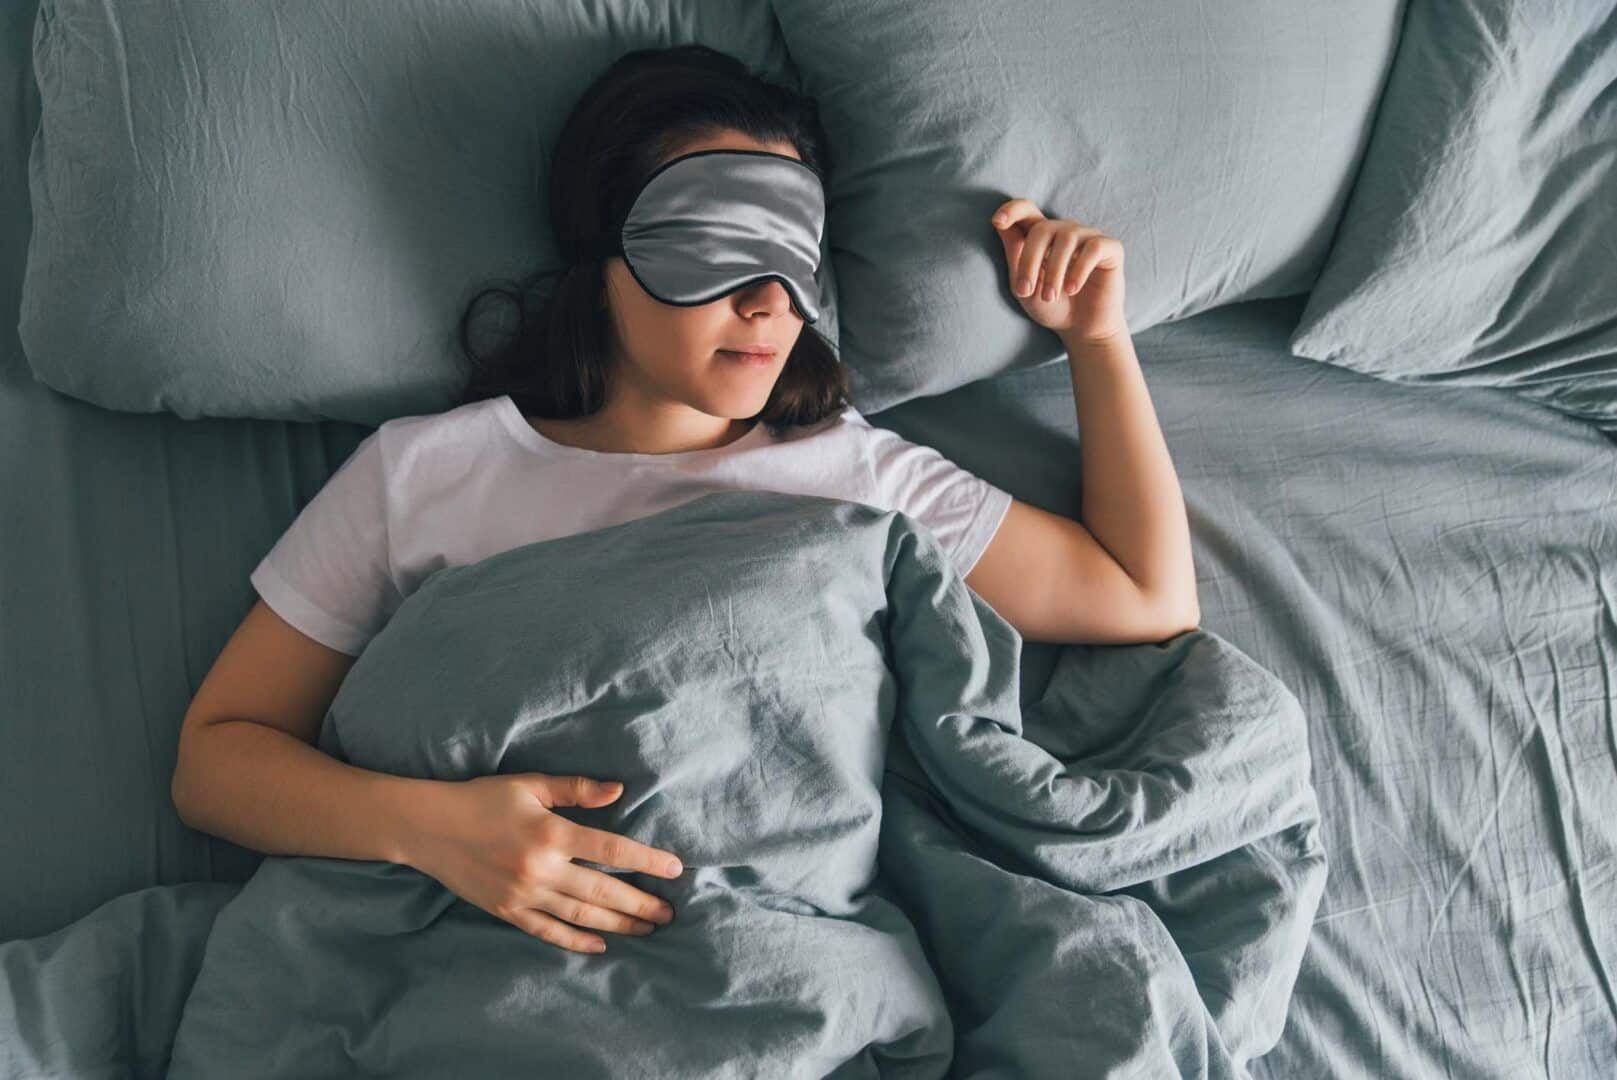 Por que dormimos? - principais funções realizadas durante o sono